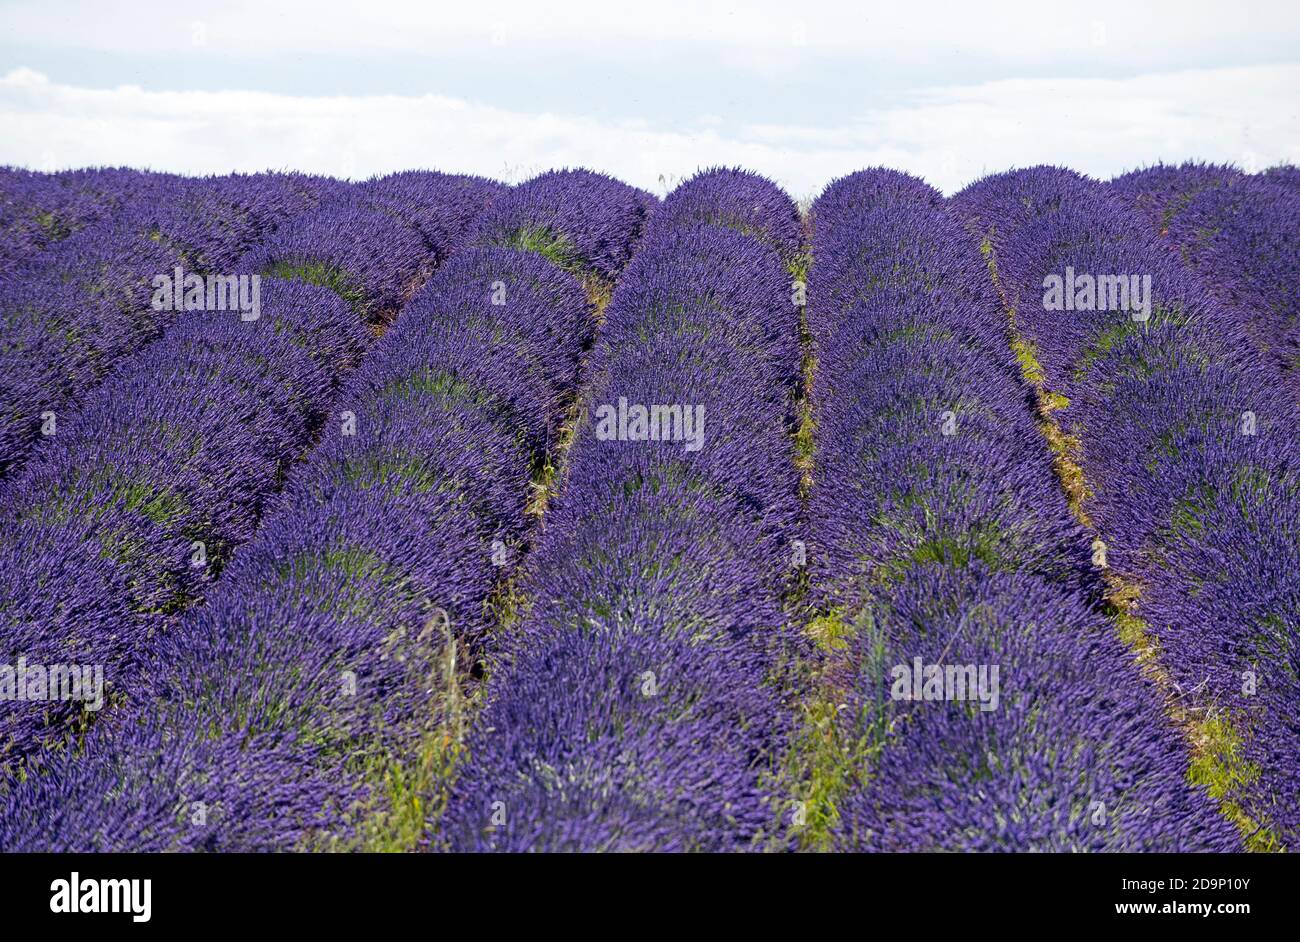 France, Alpes de Haute Provence, Plateau de Valensole, lavender fields Stock Photo